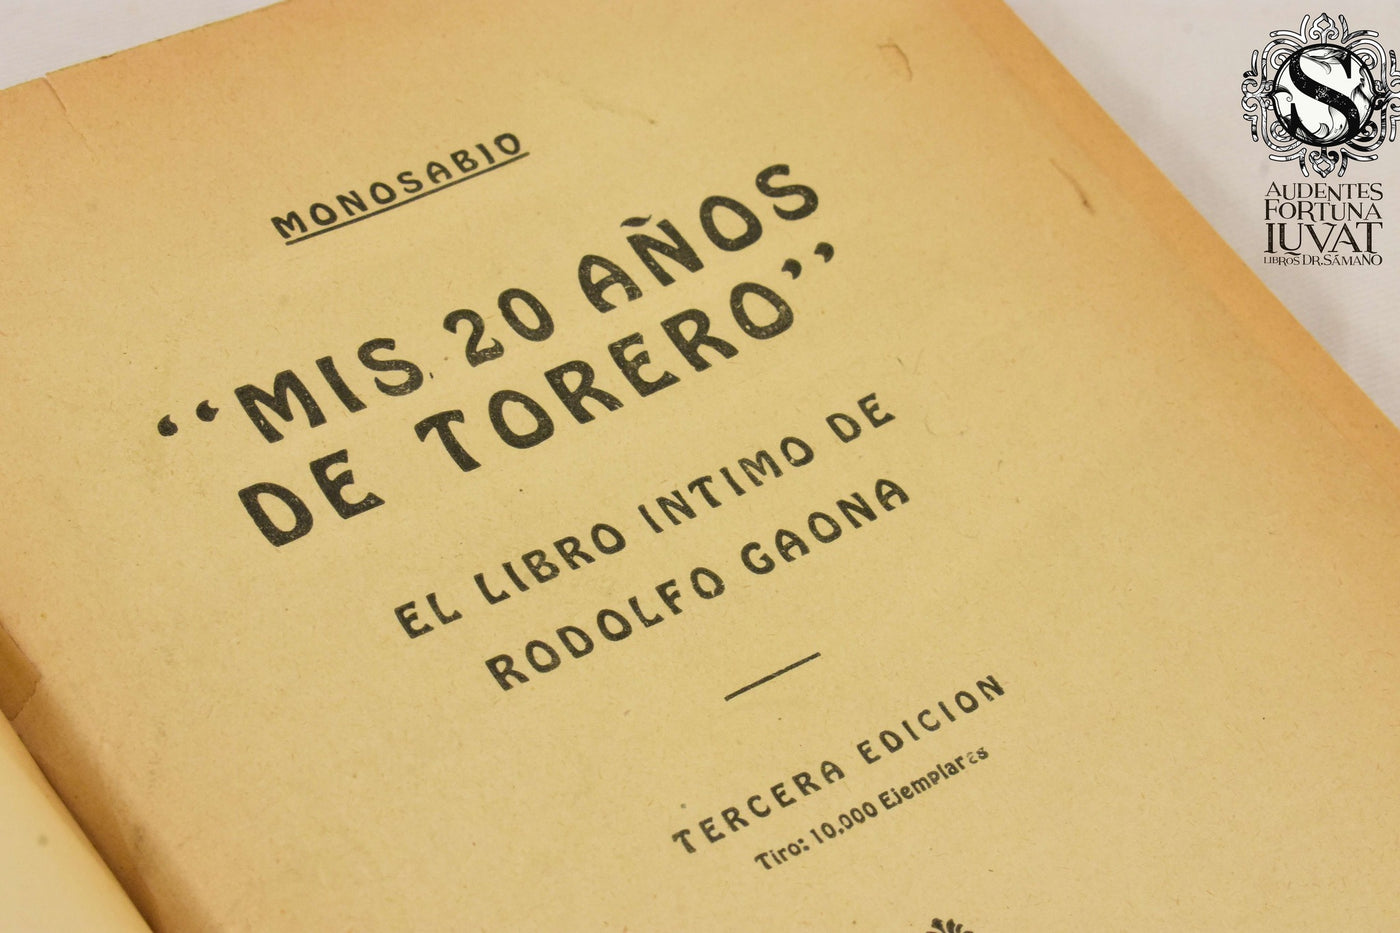 MIS 20 AÑOS DE TORERO - Carlos Quirós ("Monosabio")